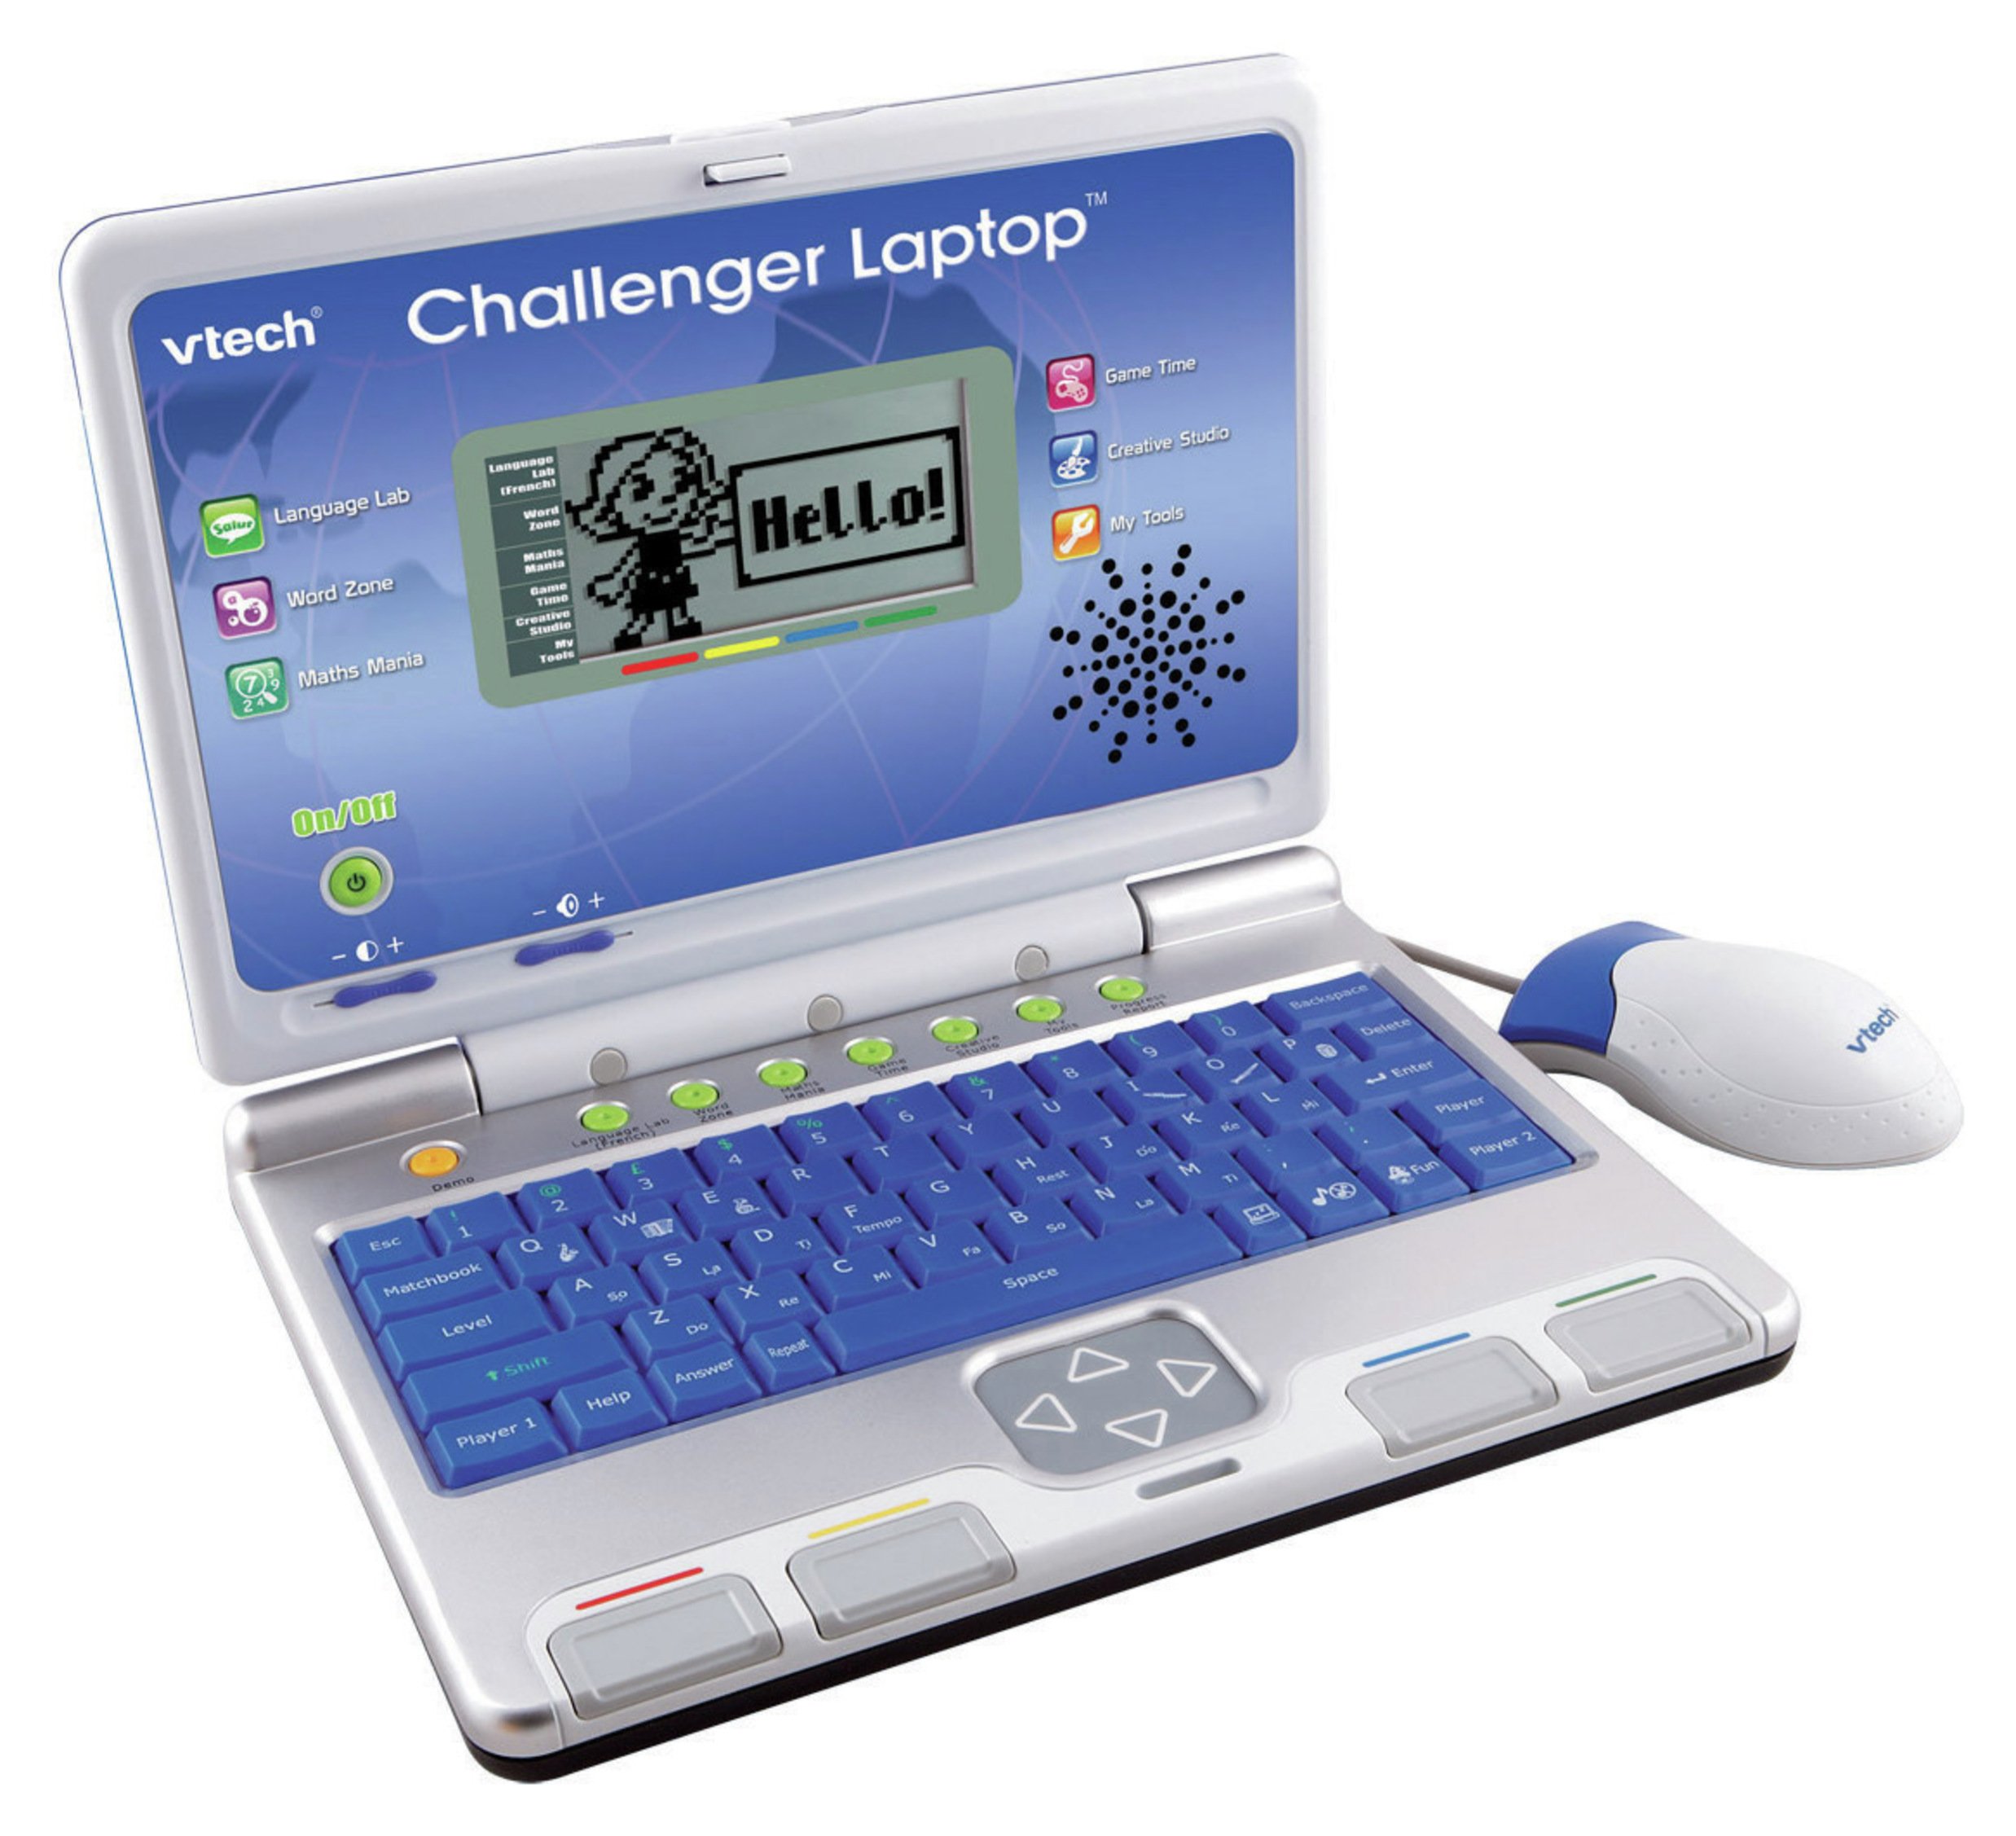 vtech children's computer